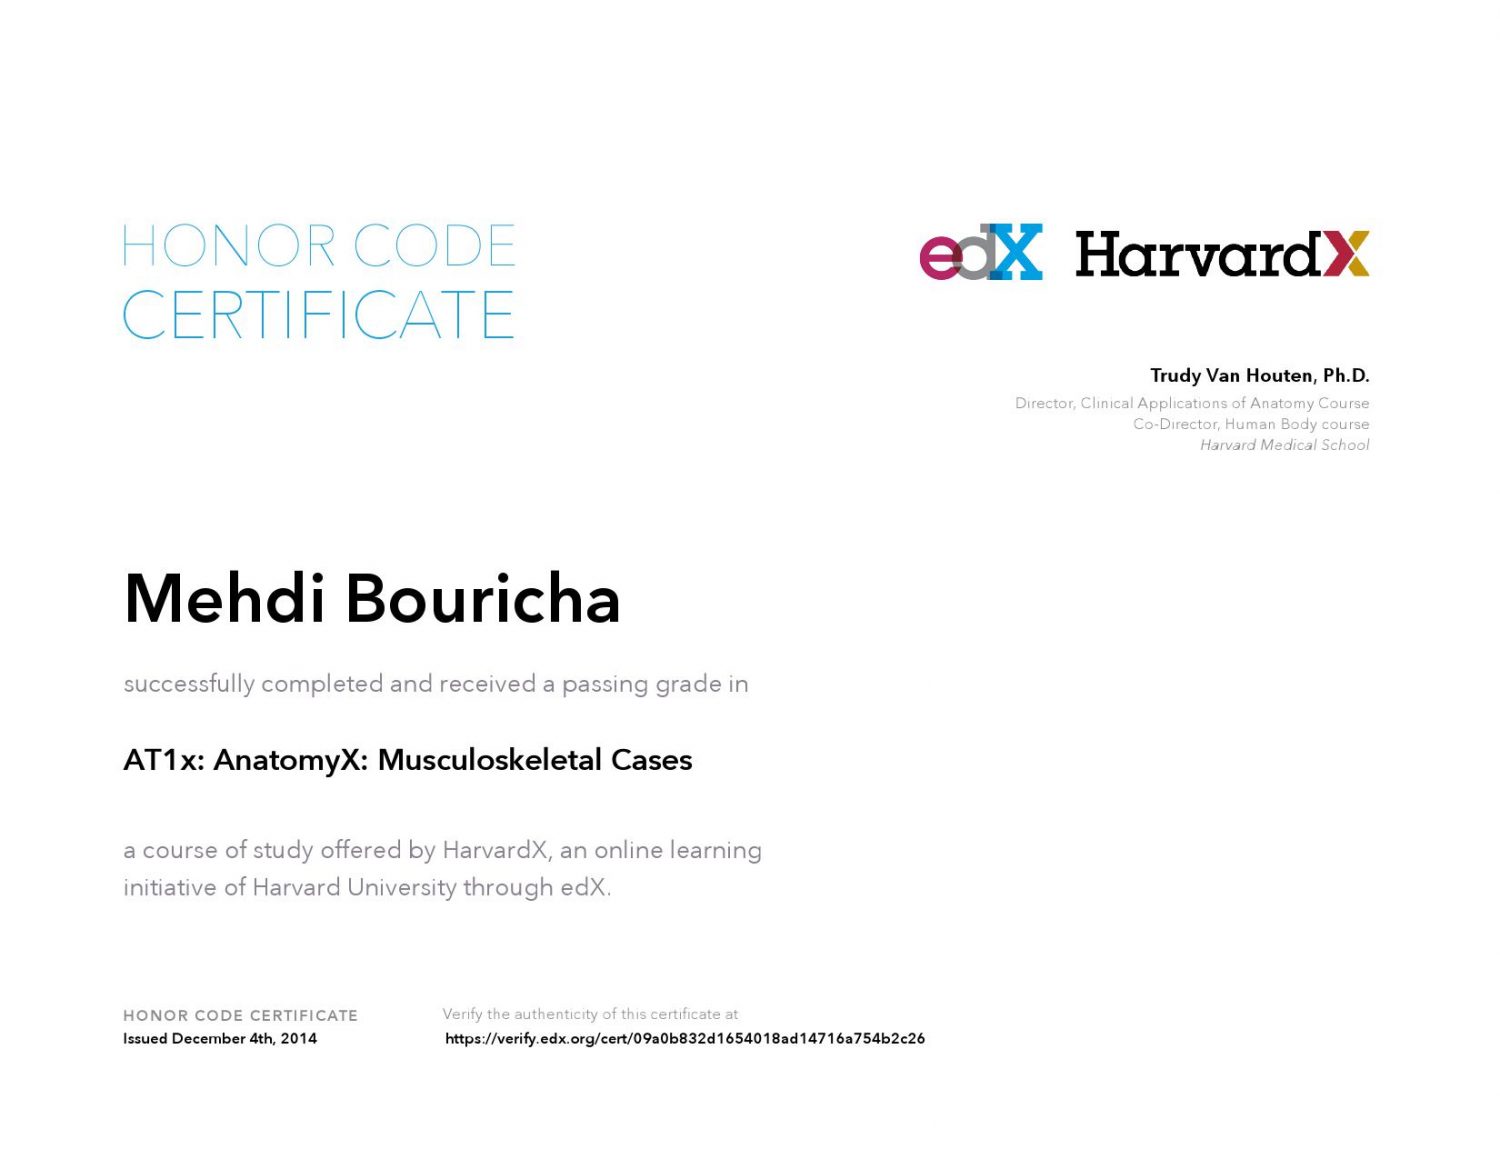 EDX IIMBX Certificate